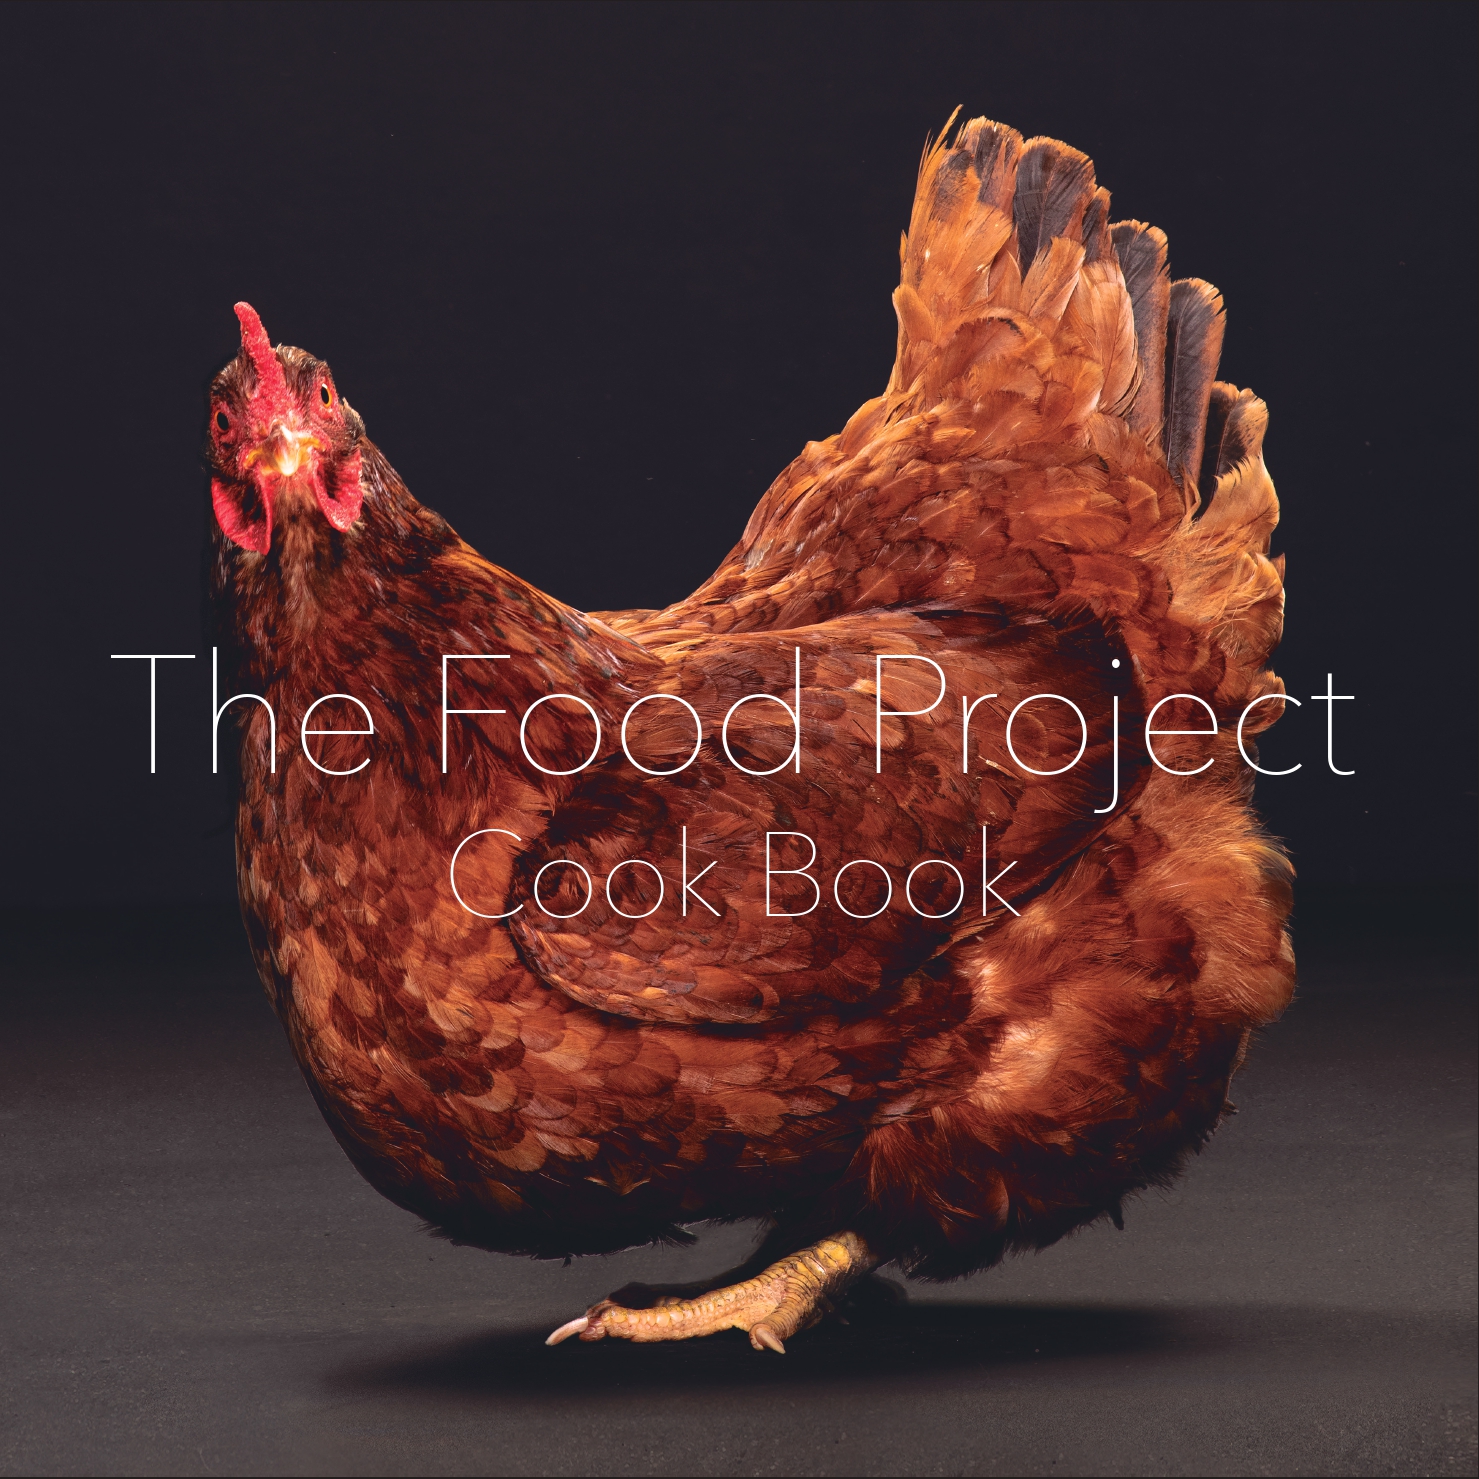 Fotógrafo curitibano lança livro “The Food Project Cook Book”, que busca humanizar os animais